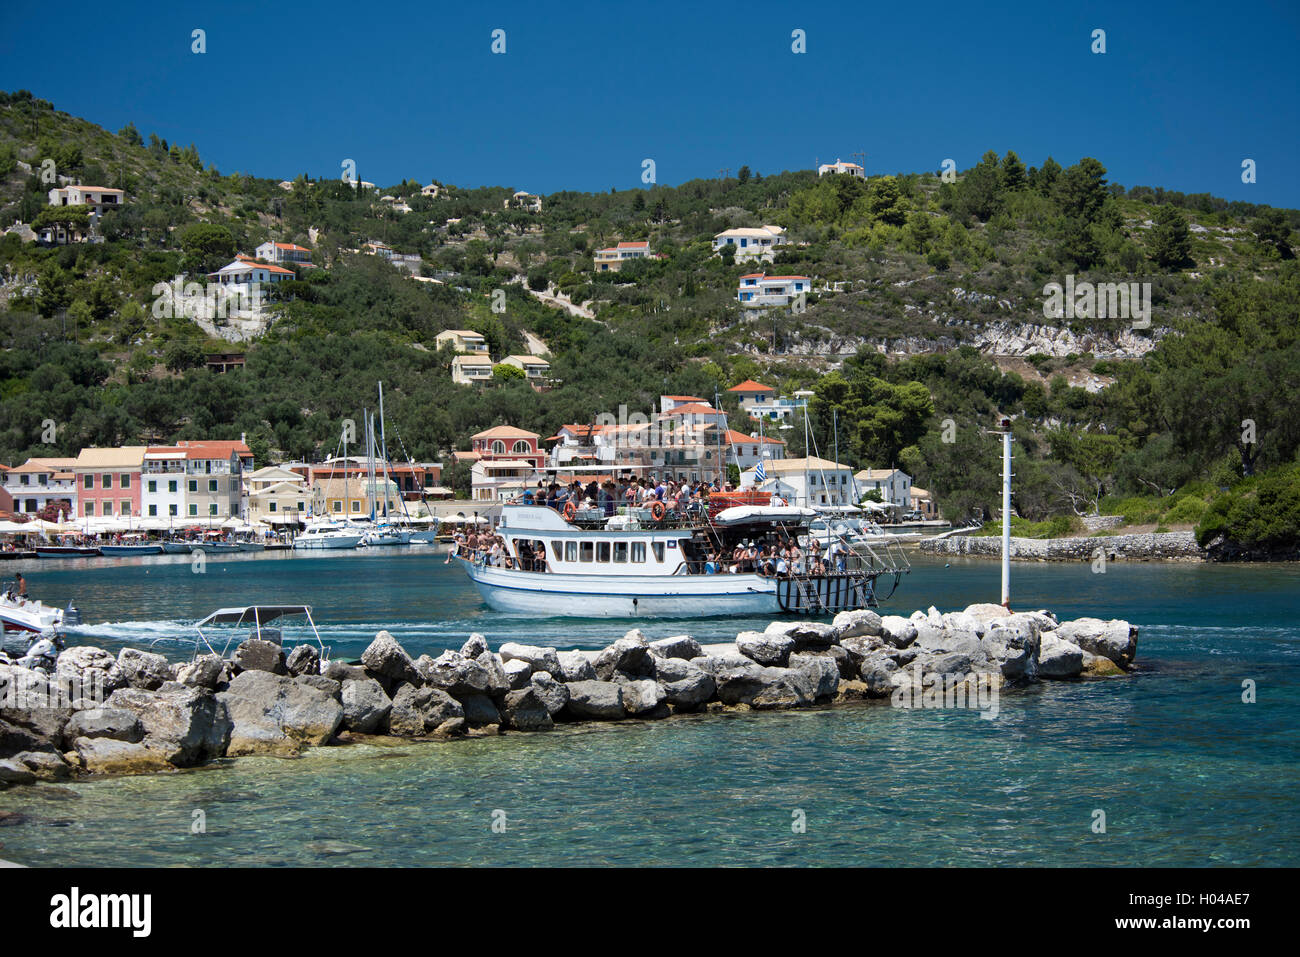 Eine Rechtskurve Boot voller Touristen gehen in den Hafen von Gaios auf der Insel Paxos, die Ionischen Inseln, die griechischen Inseln, Griechenland Stockfoto